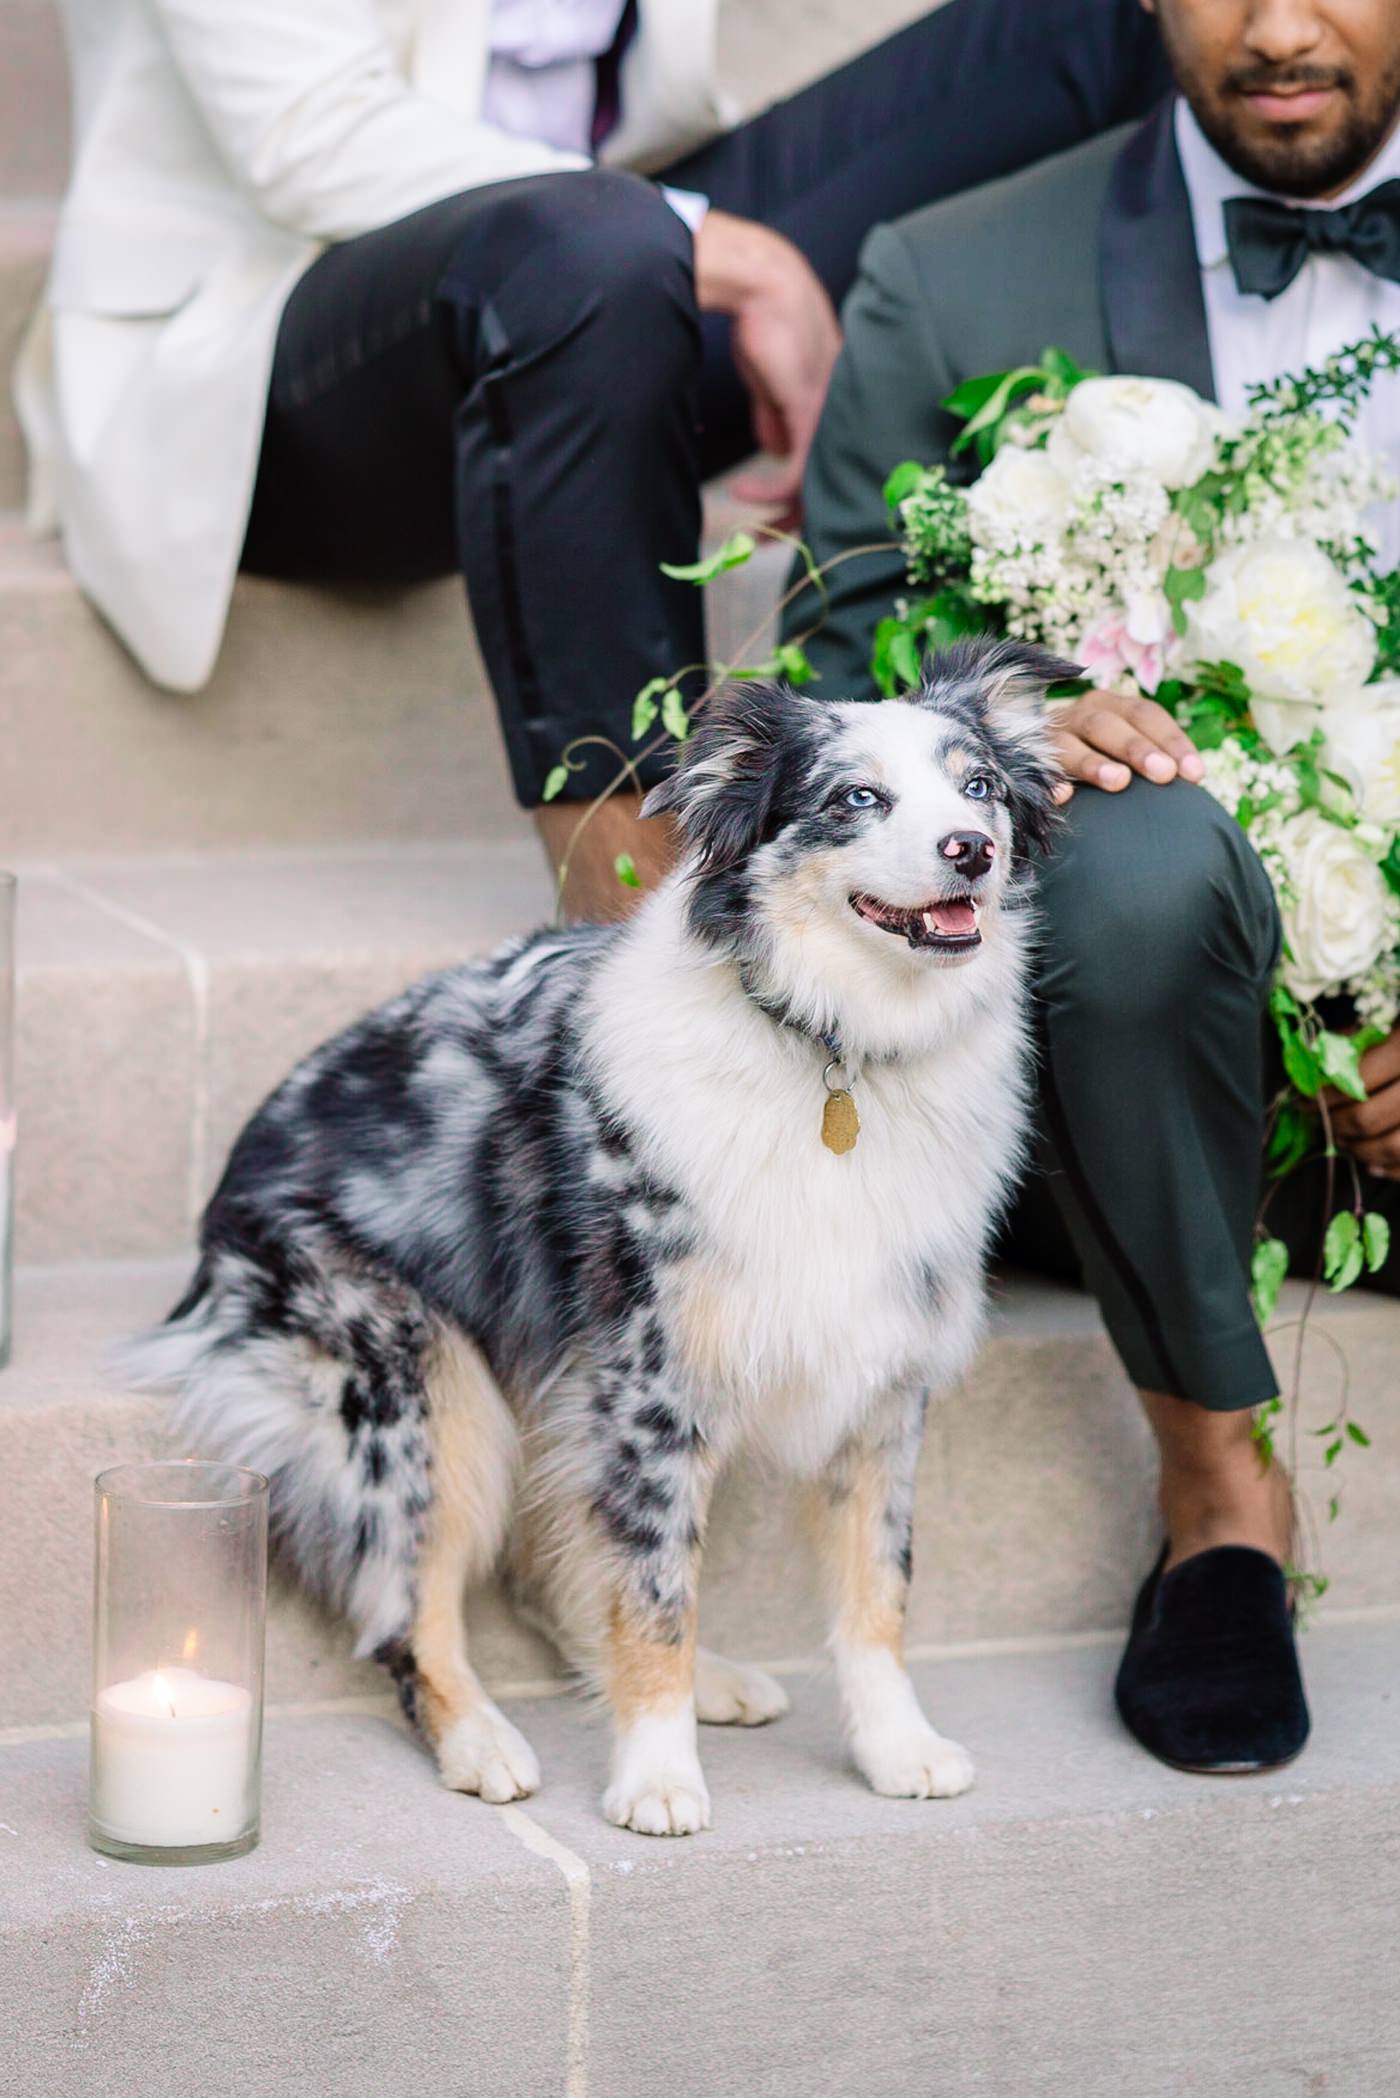 dog at wedding, wedding dogs, austrialian sheppard at wedding, wedding puppy